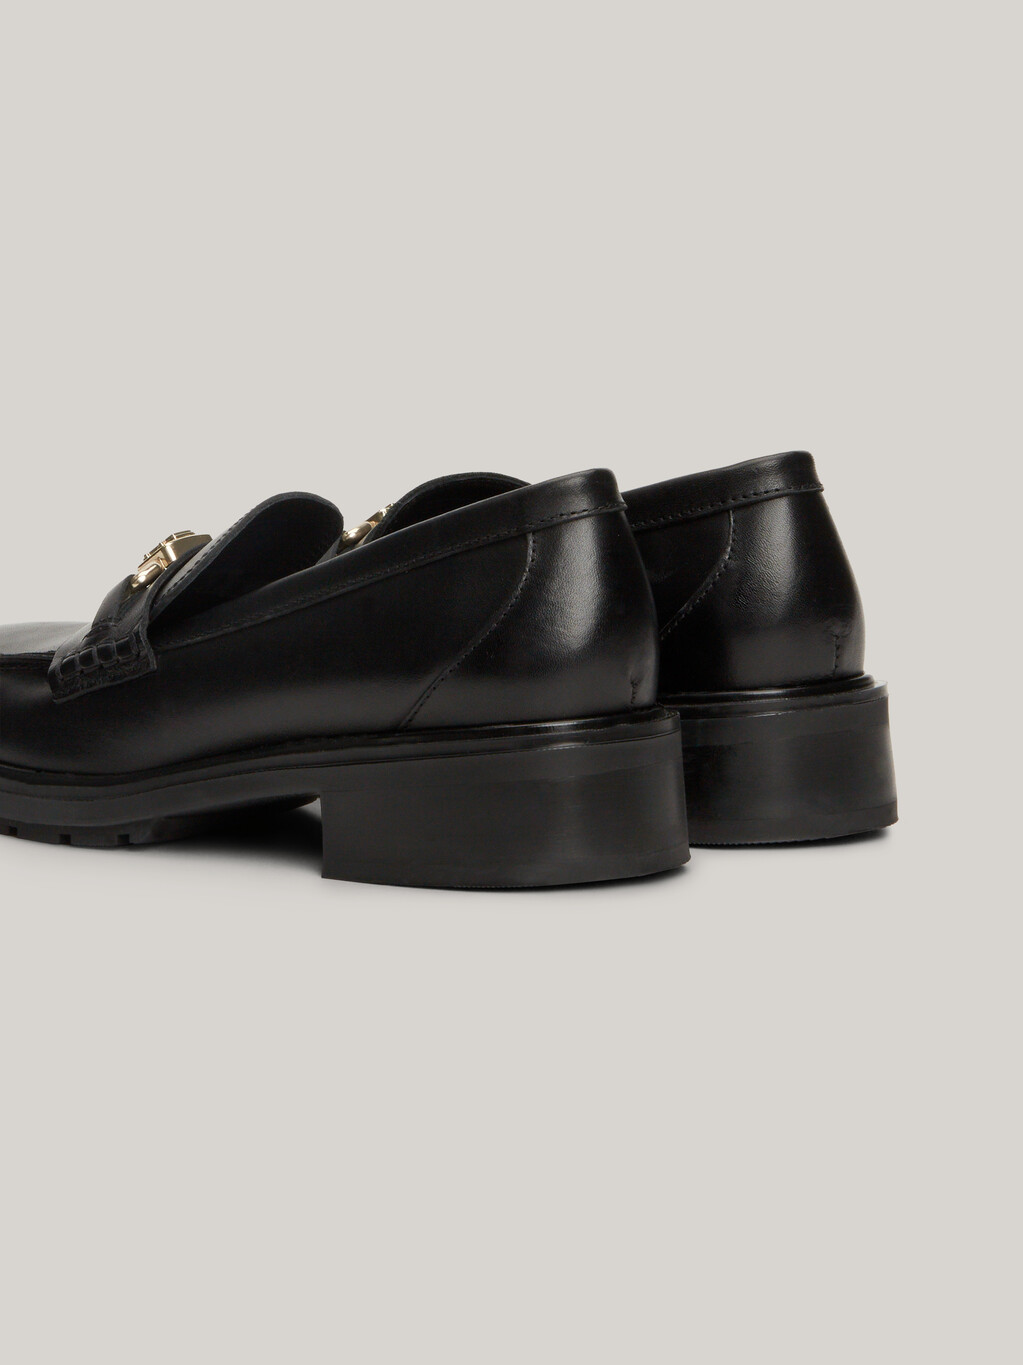 TH Monogram皮樂福鞋, Black, hi-res